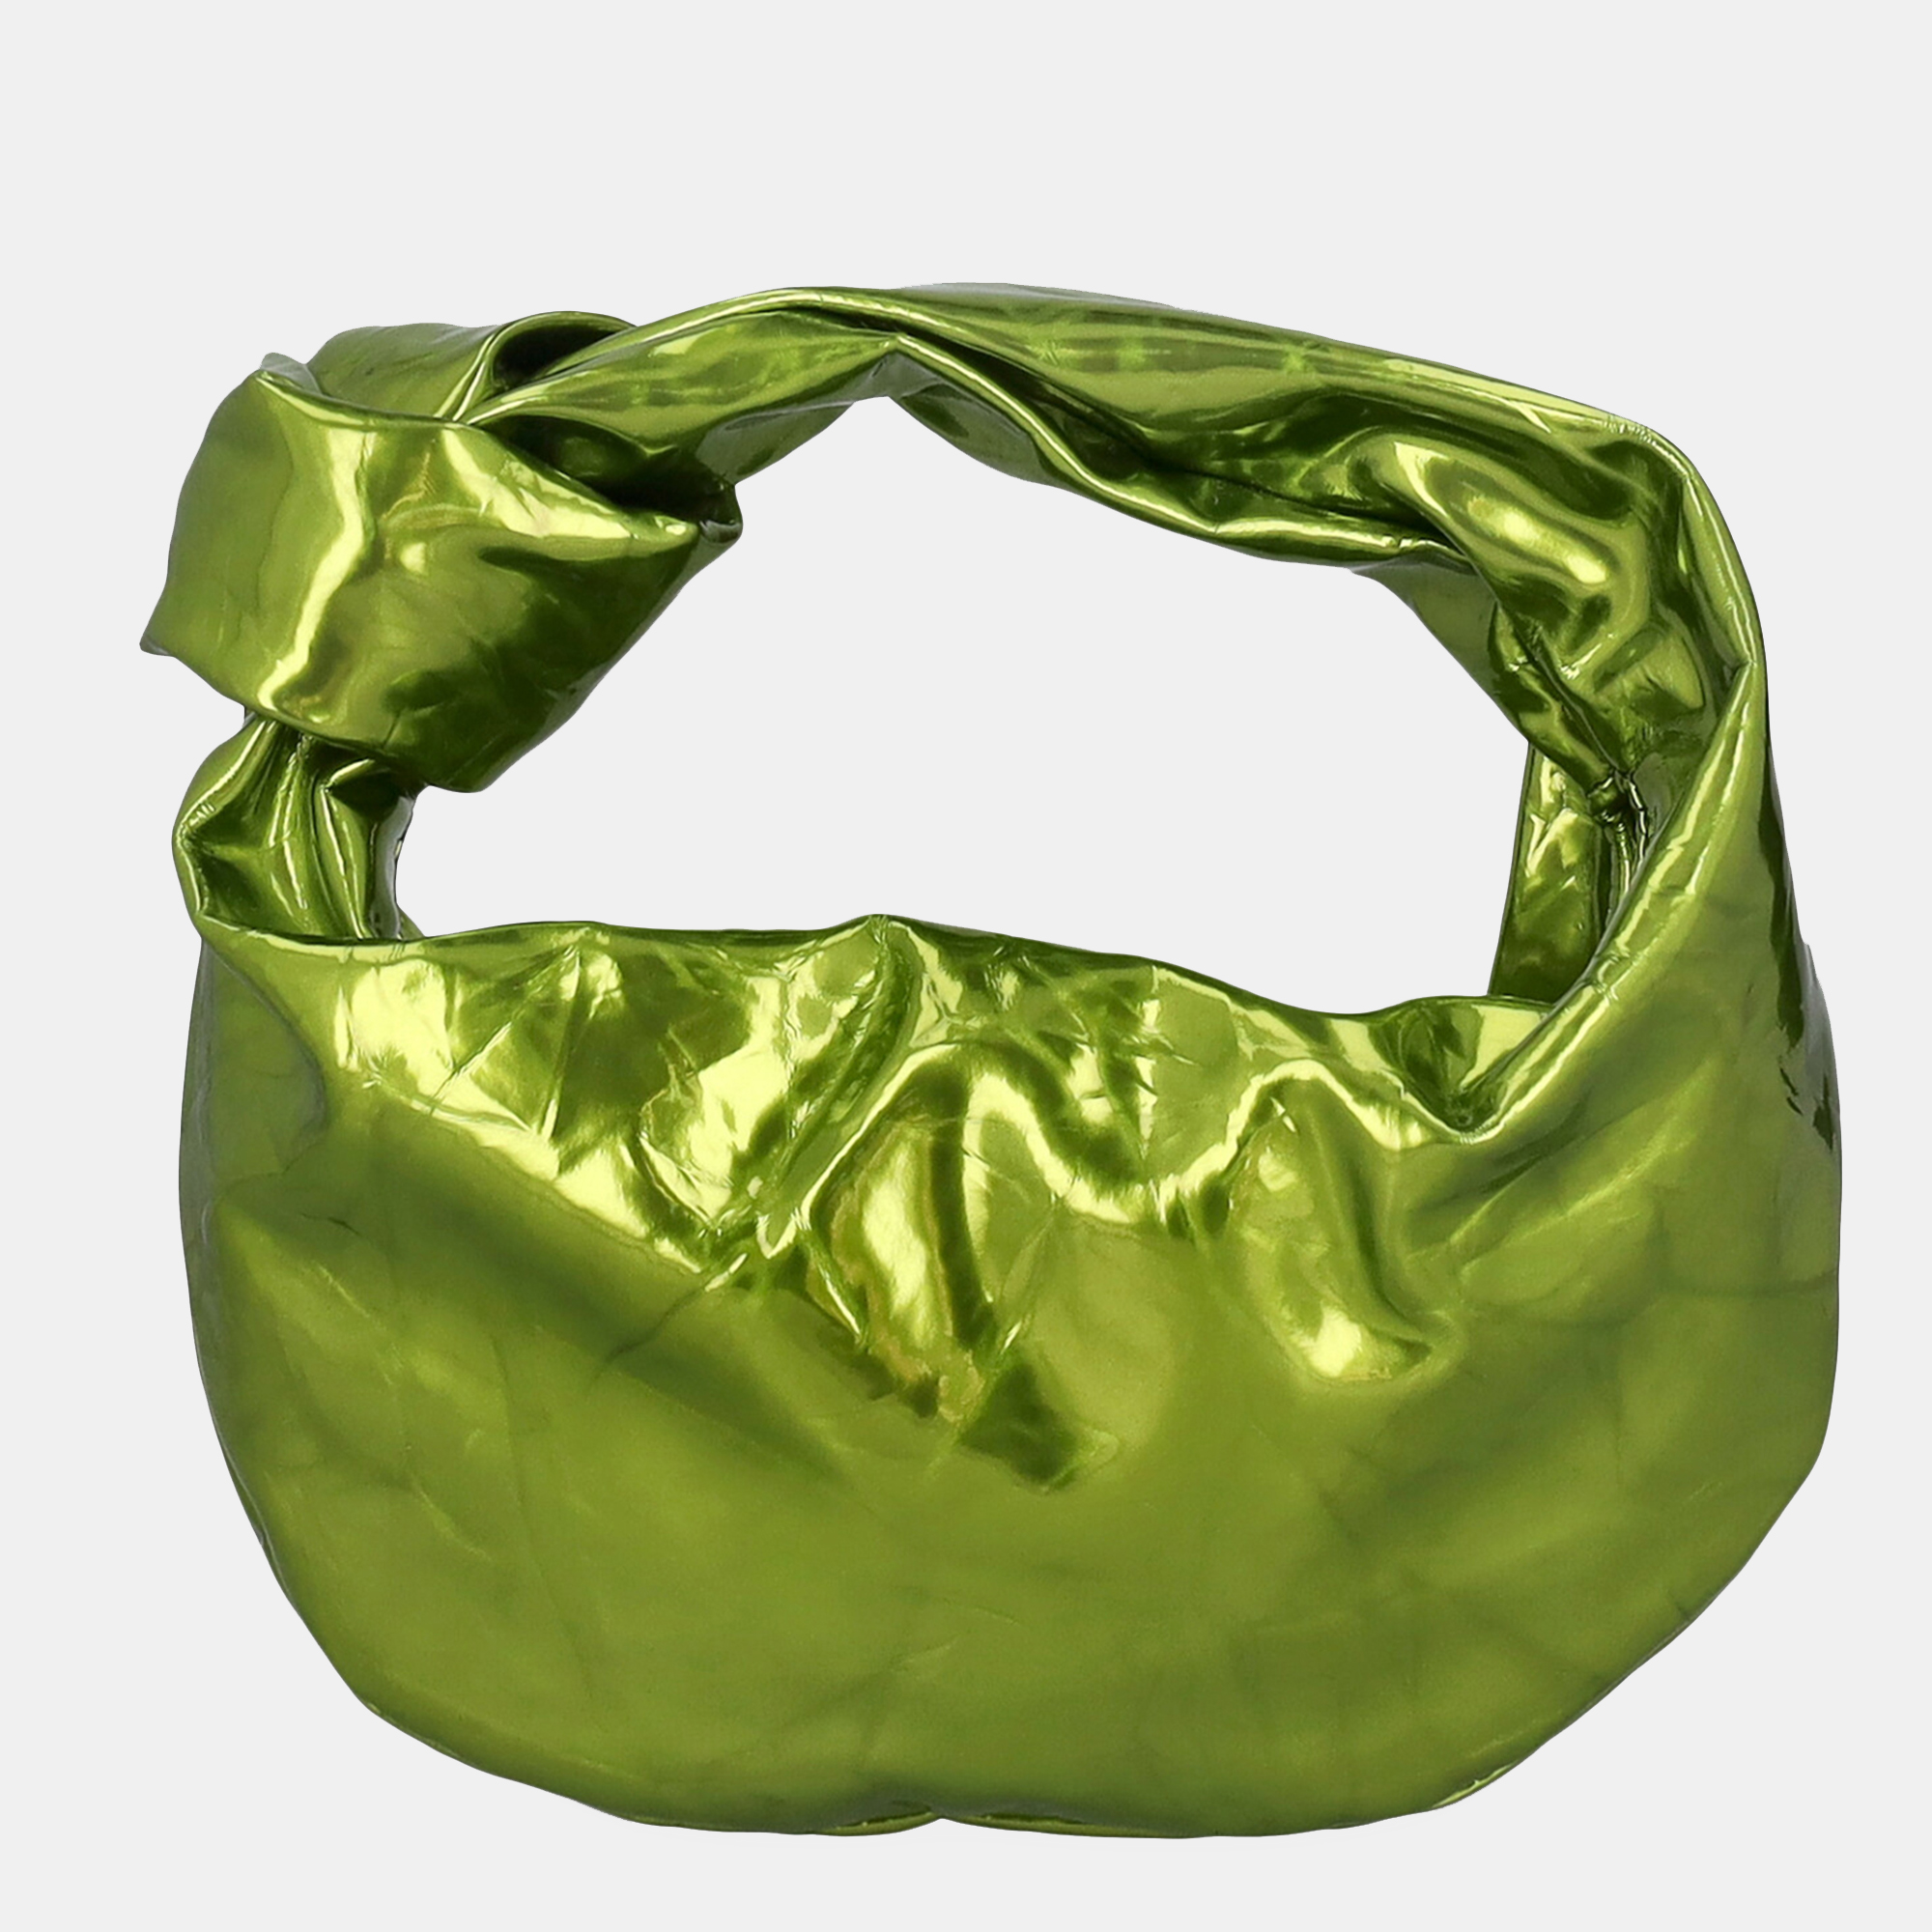 Bottega Veneta  Women's Leather Clutch Bag - Green - One Size